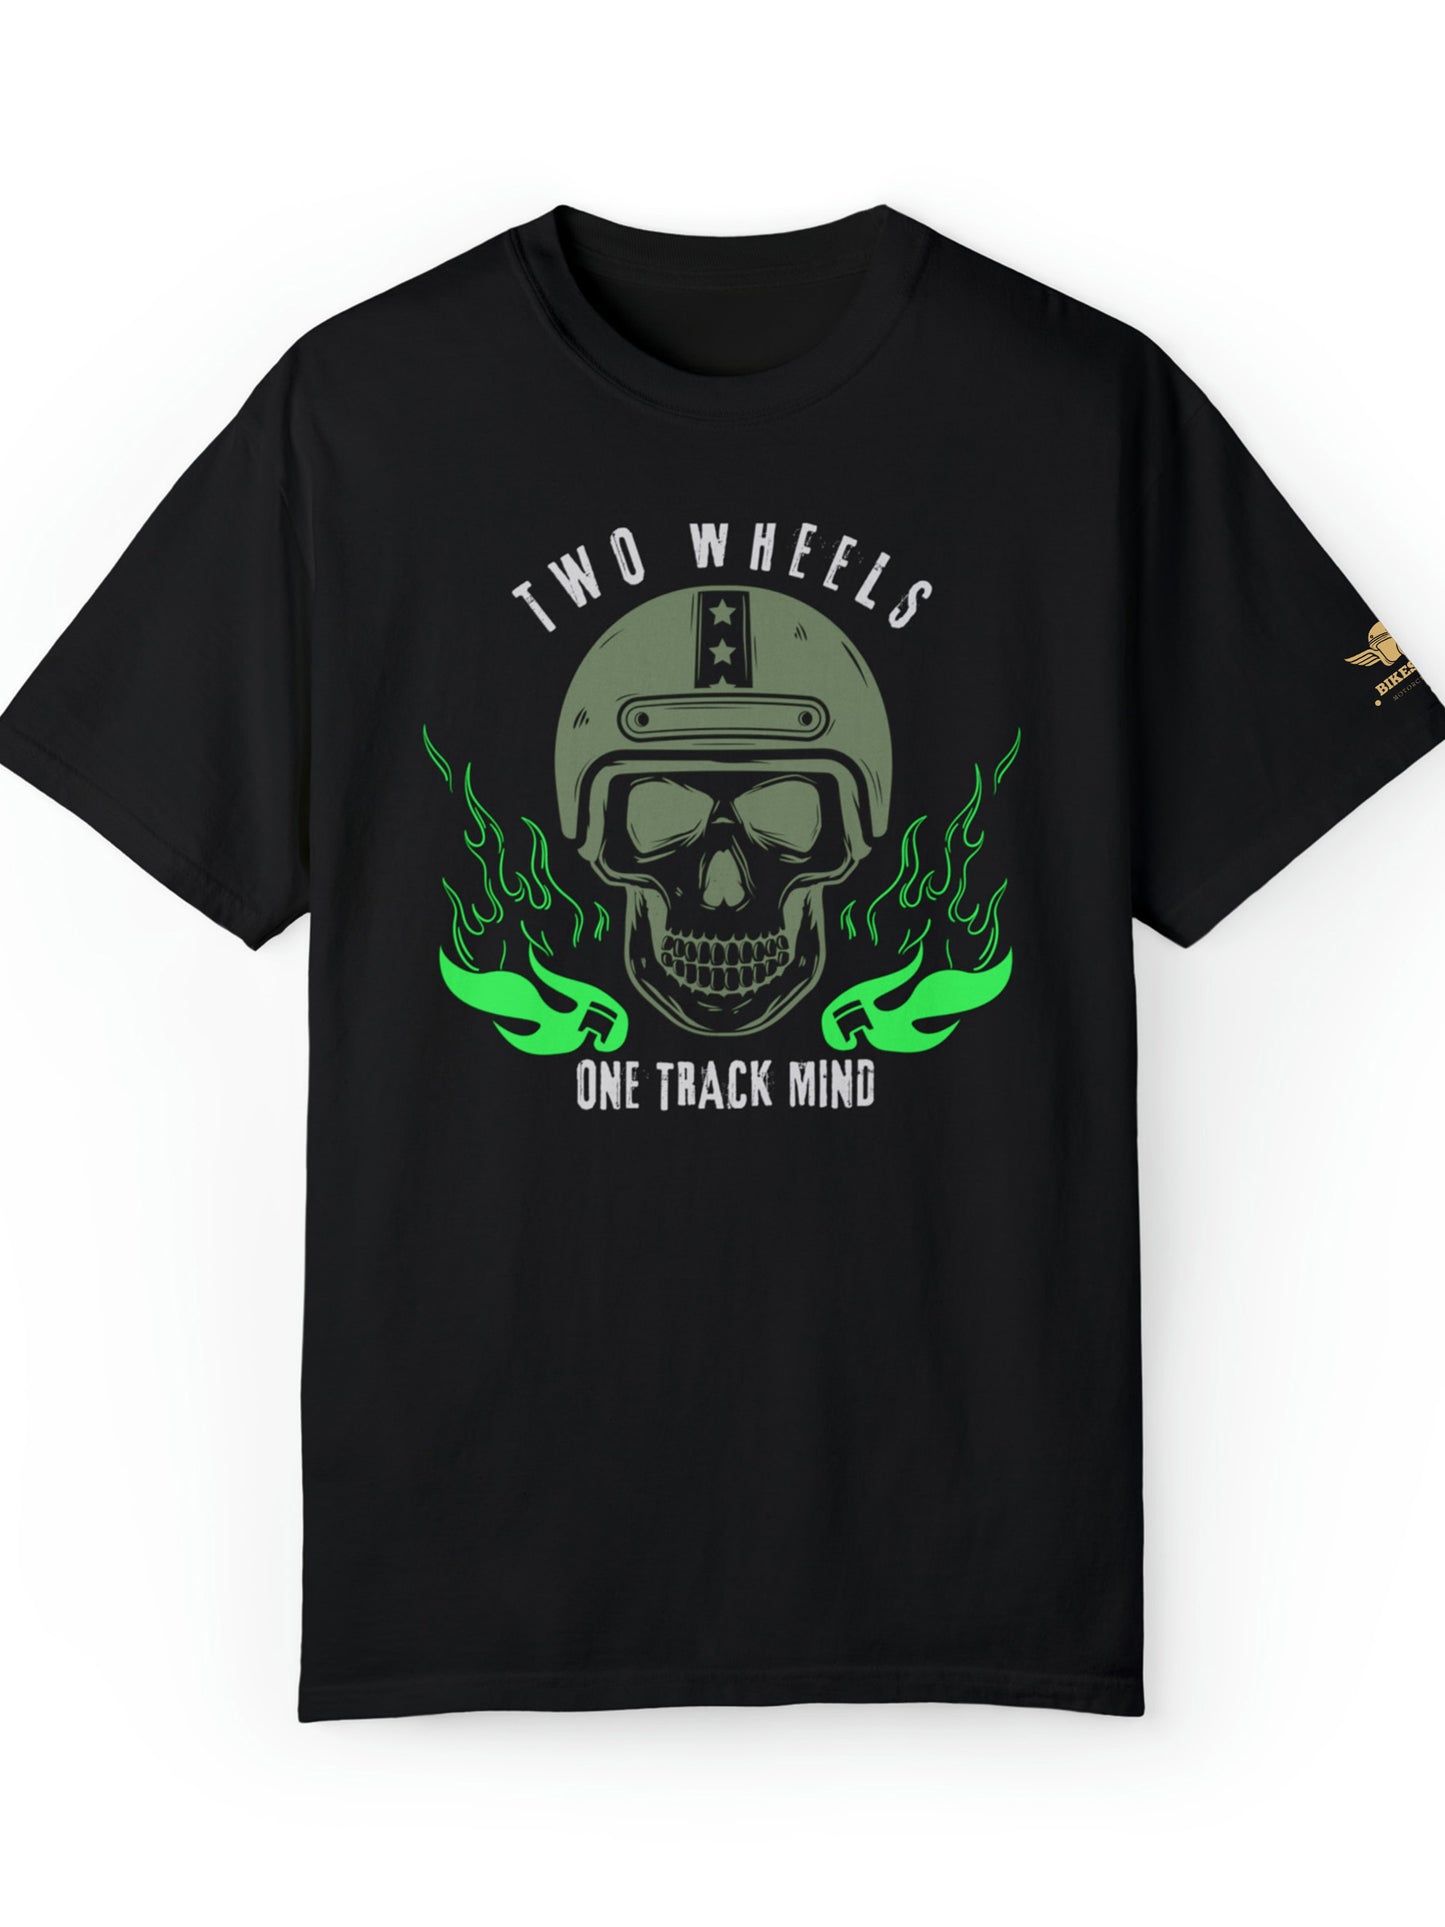 T-shirt moto manche courte noir - Two Wheels